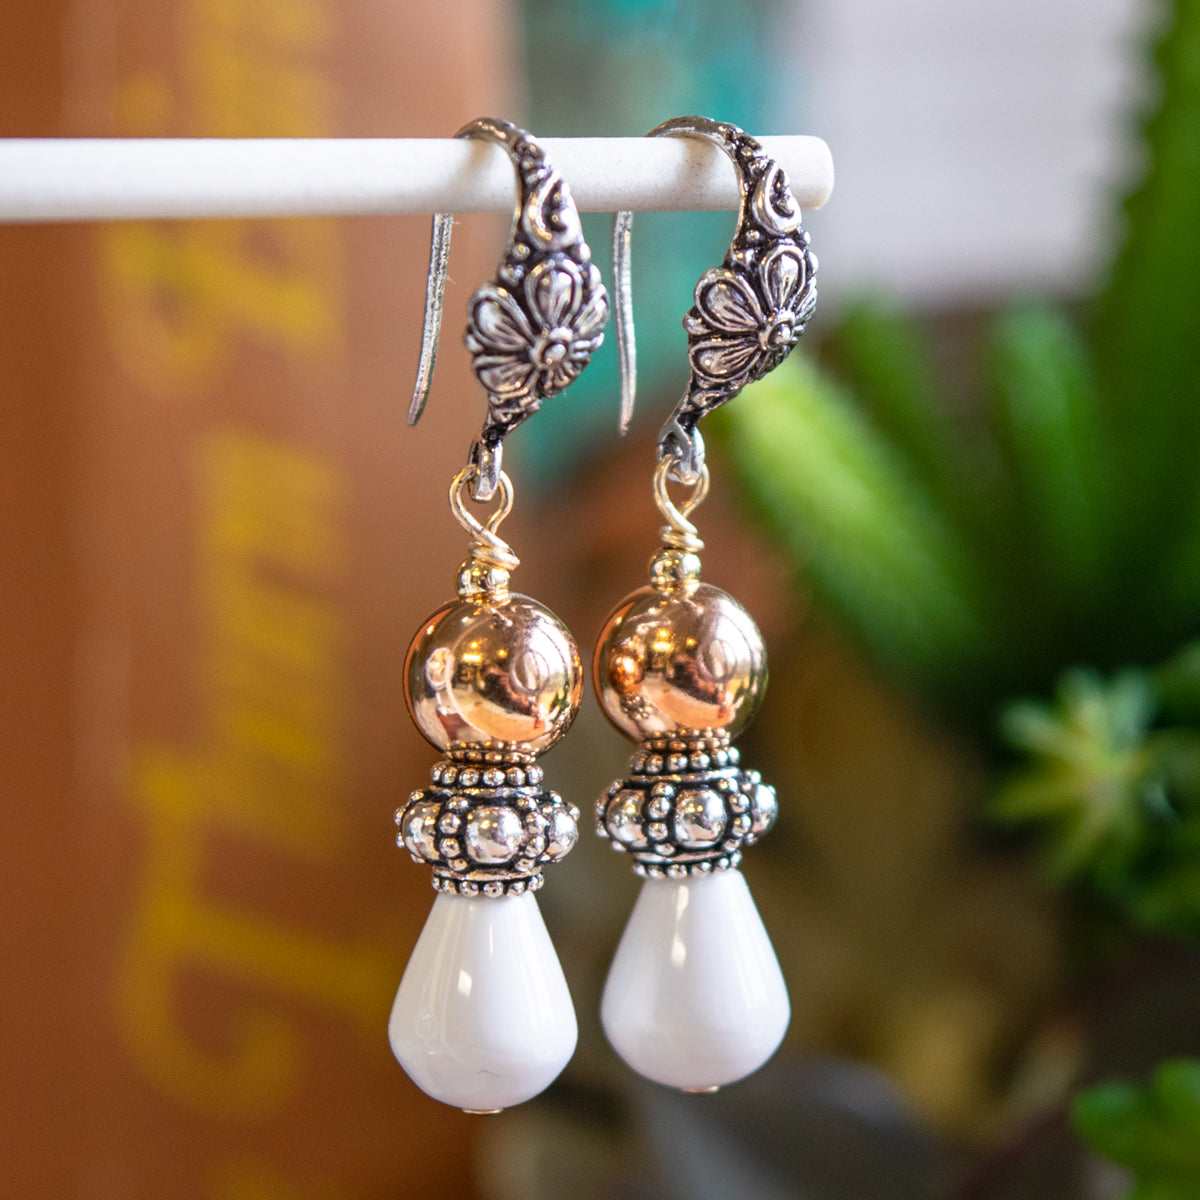 White Quartz & Rose Gold-Filled Earrings